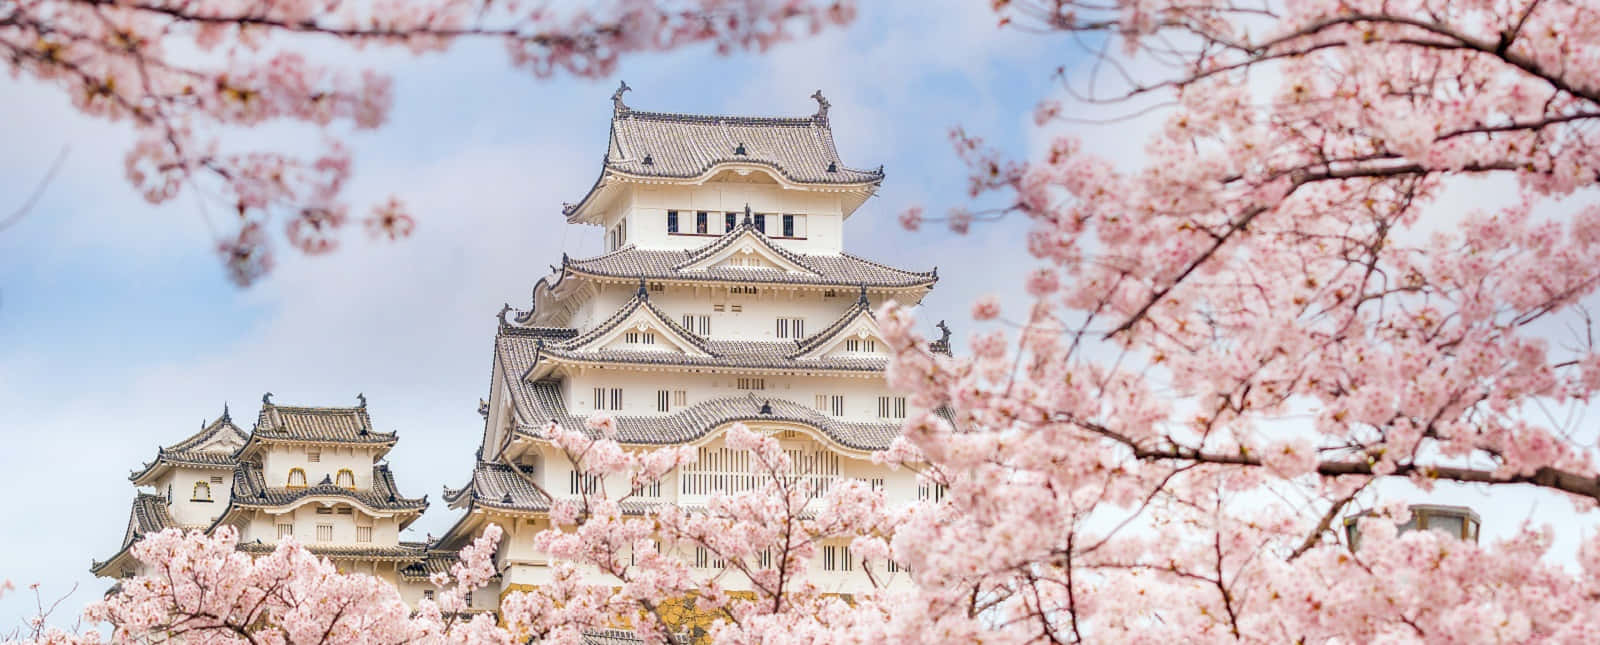 Imagendel Castillo De Himeji Con Cerezos En Flor